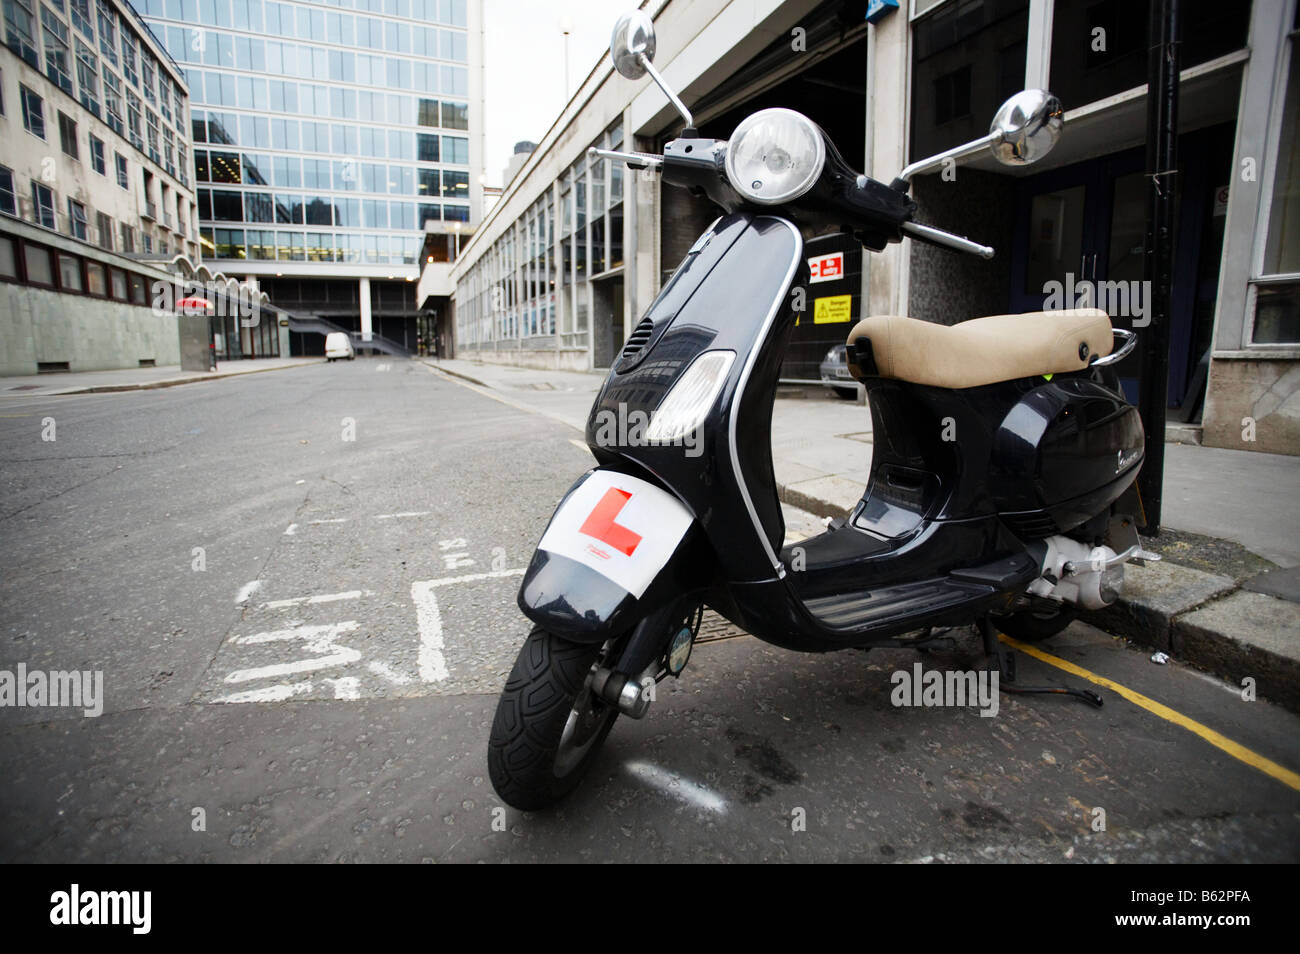 Cyclomoteur scooter avec l'apprenant plaques rider à Londres Angleterre Royaume-uni Banque D'Images